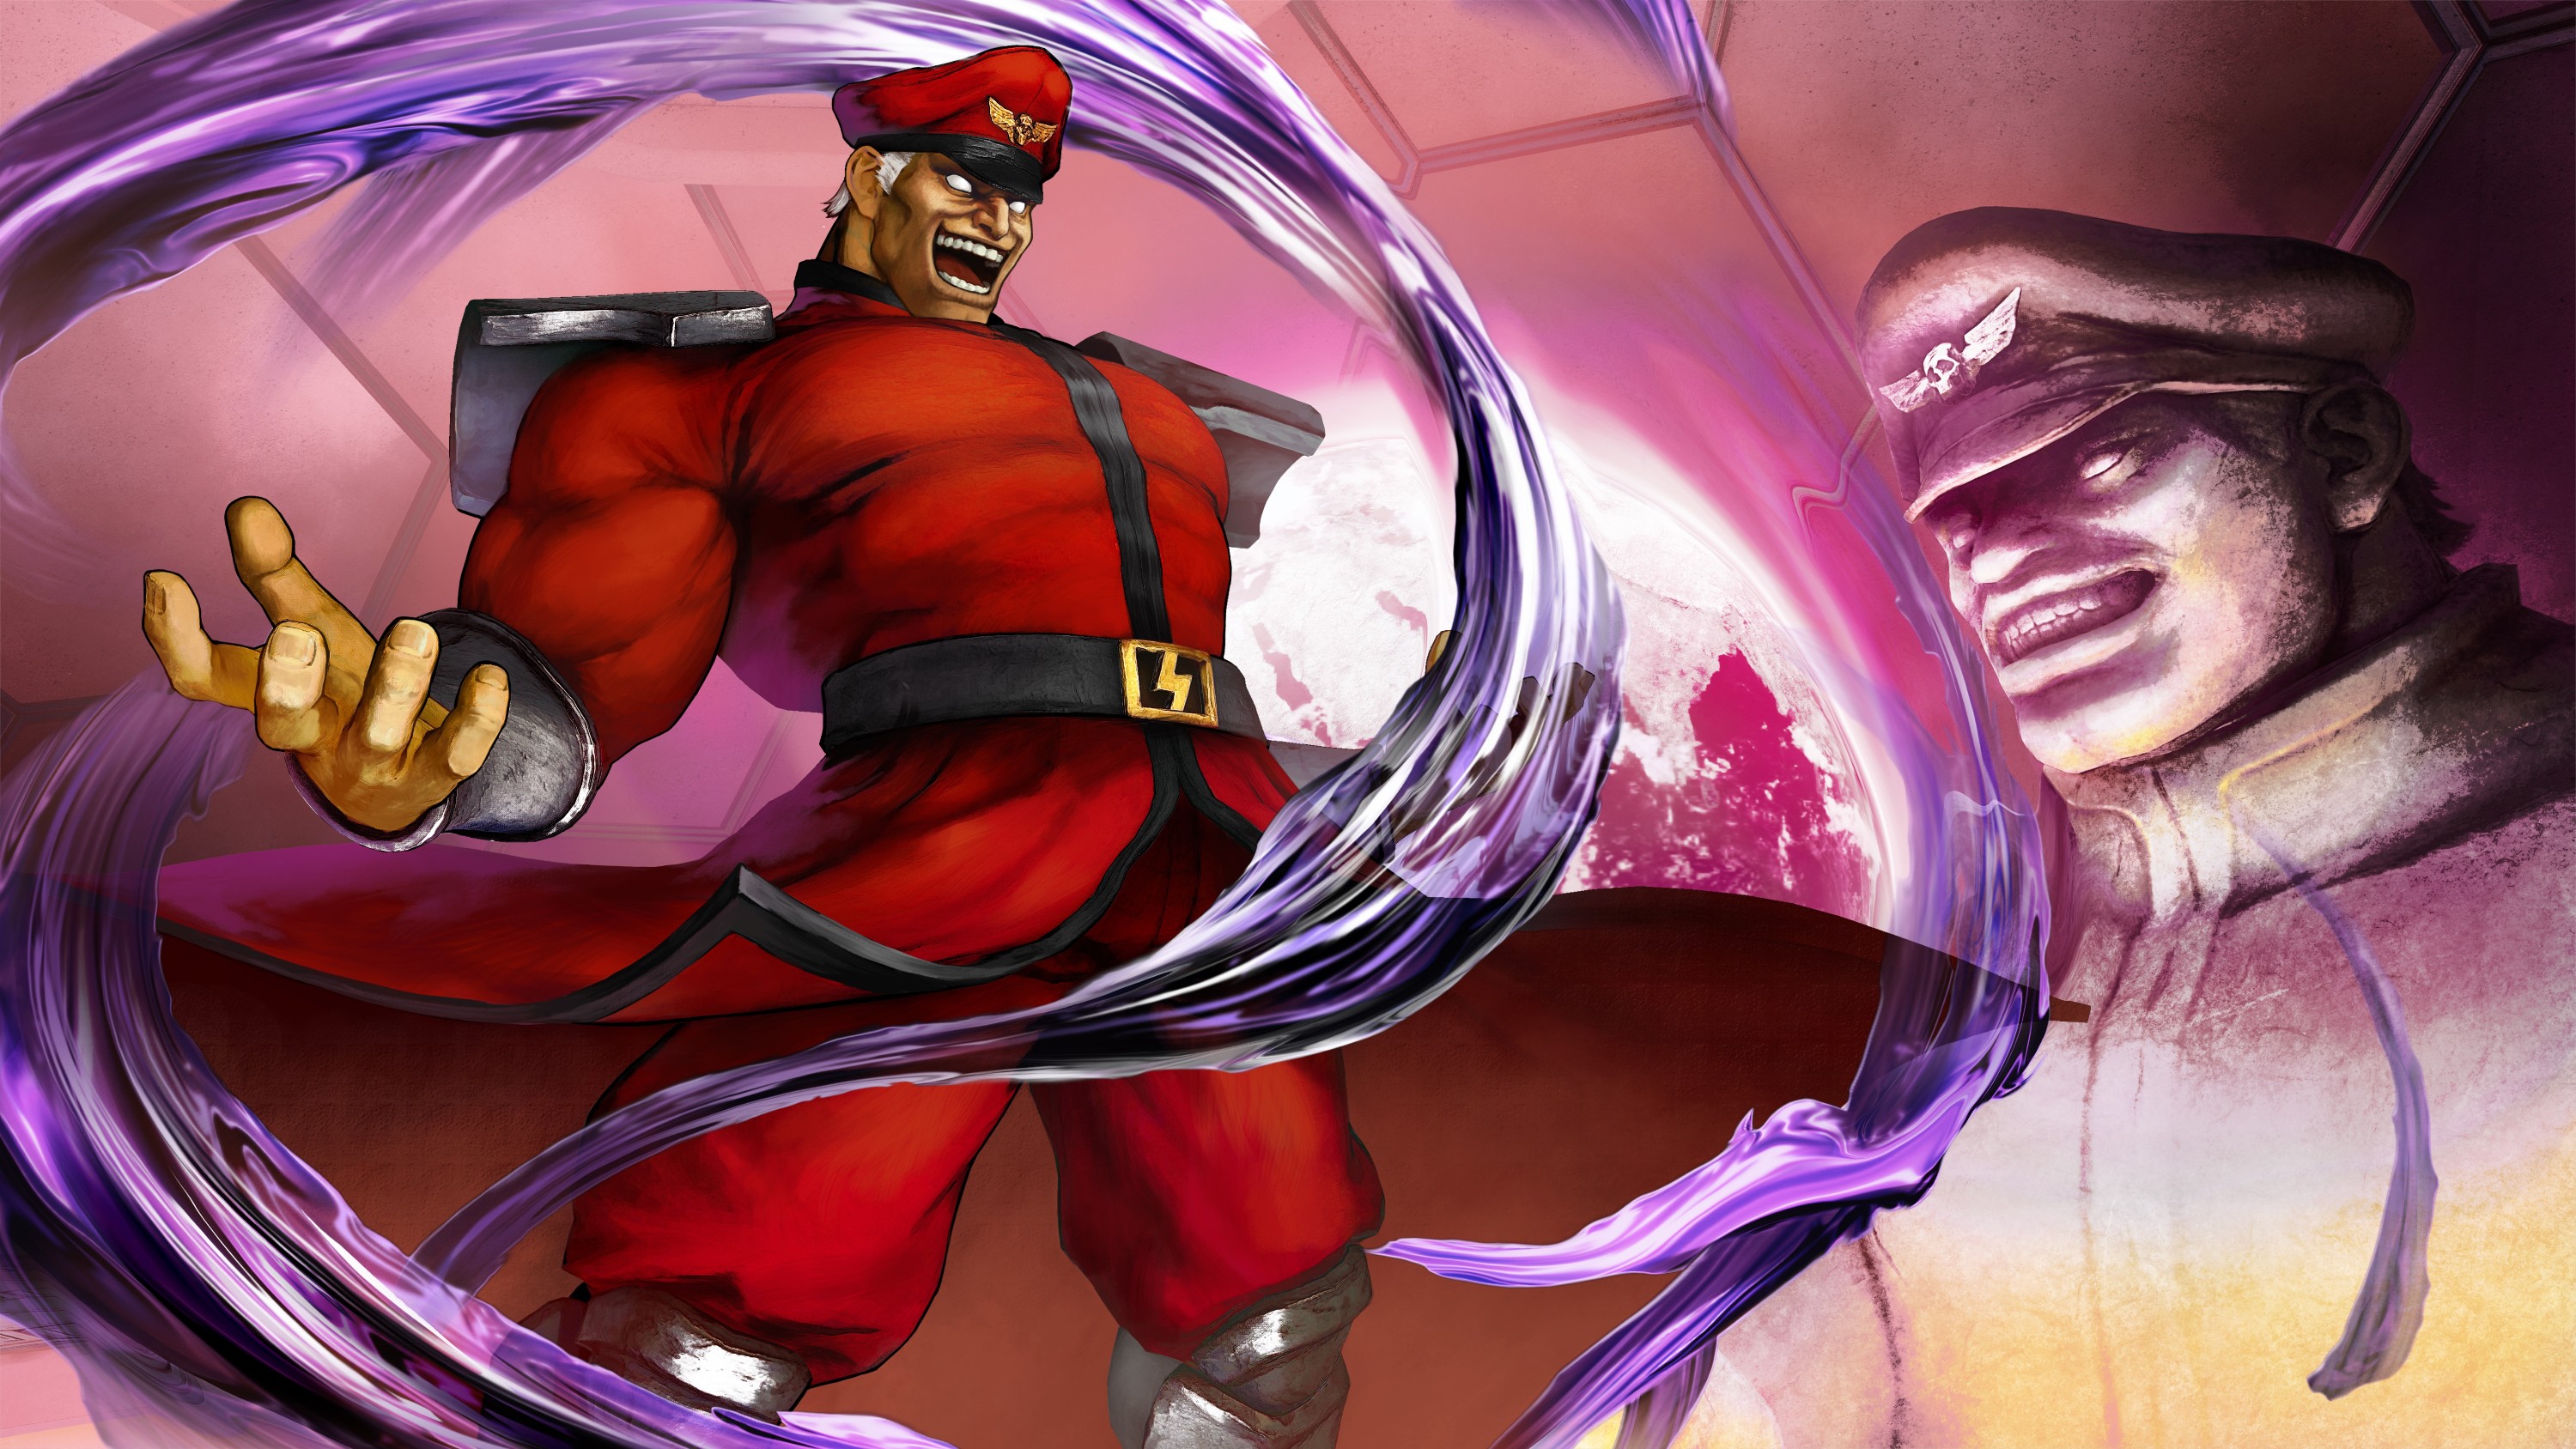 Street Fighter V, M. bison, PlayStation 4 Wallpaper